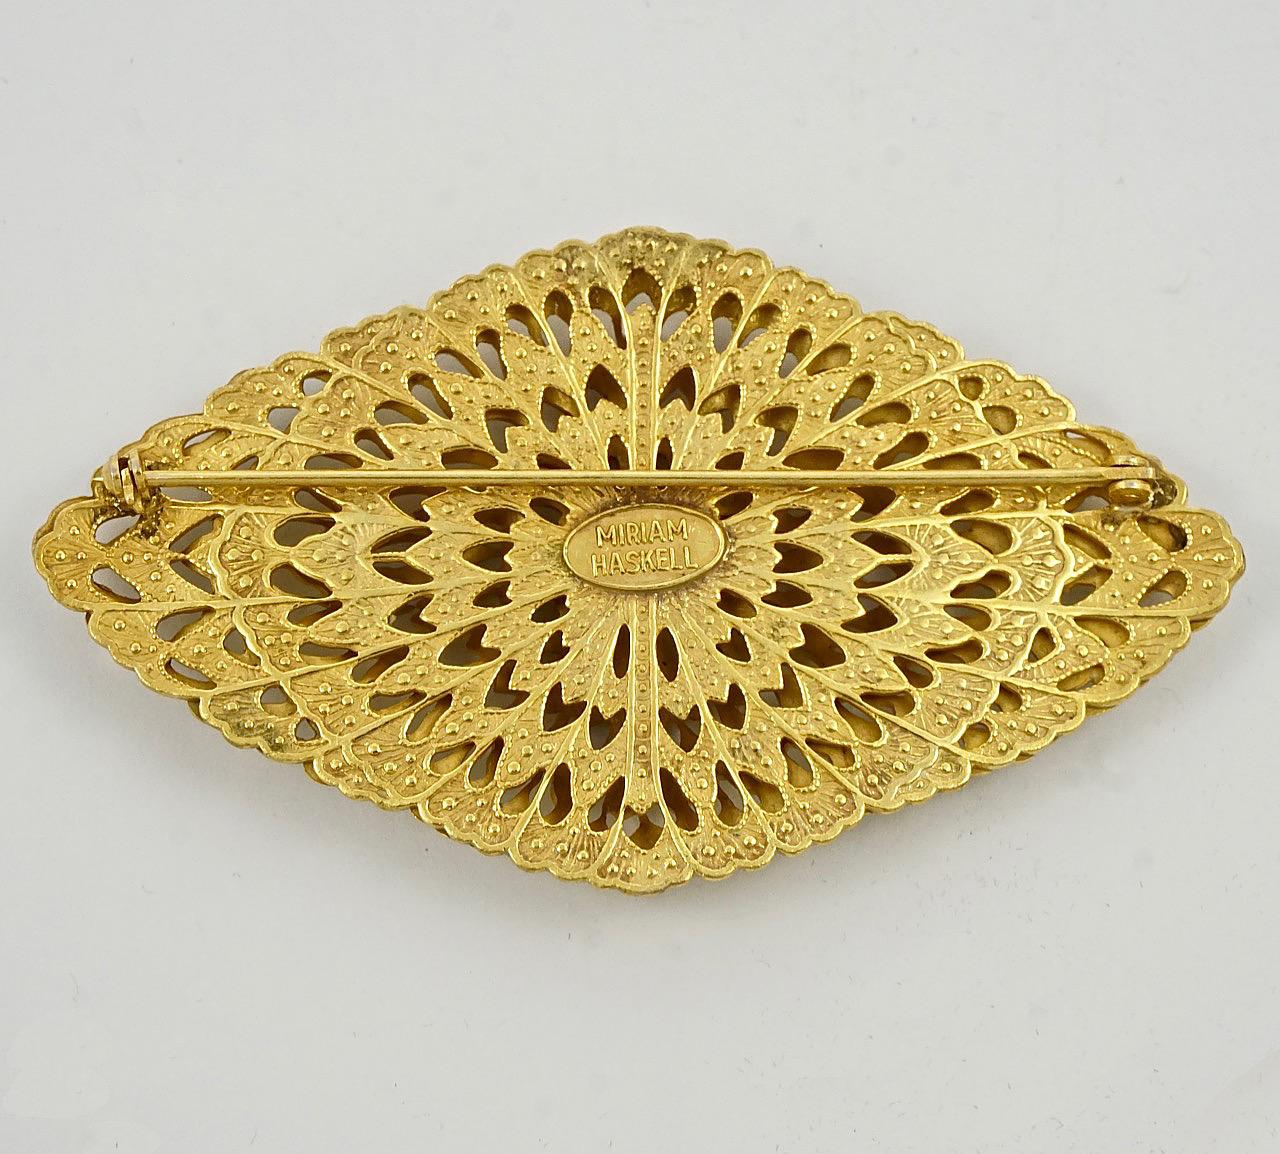 Miriam Haskell : belle broche russe en plaqué or, ornée de diamants, avec quatre dômes. Longueur 8.6 cm / 3.3 inches et largeur 4.8 cm / 1.9 inches. La broche est en très bon état.

Il s'agit d'une magnifique broche complexe avec la patine dorée